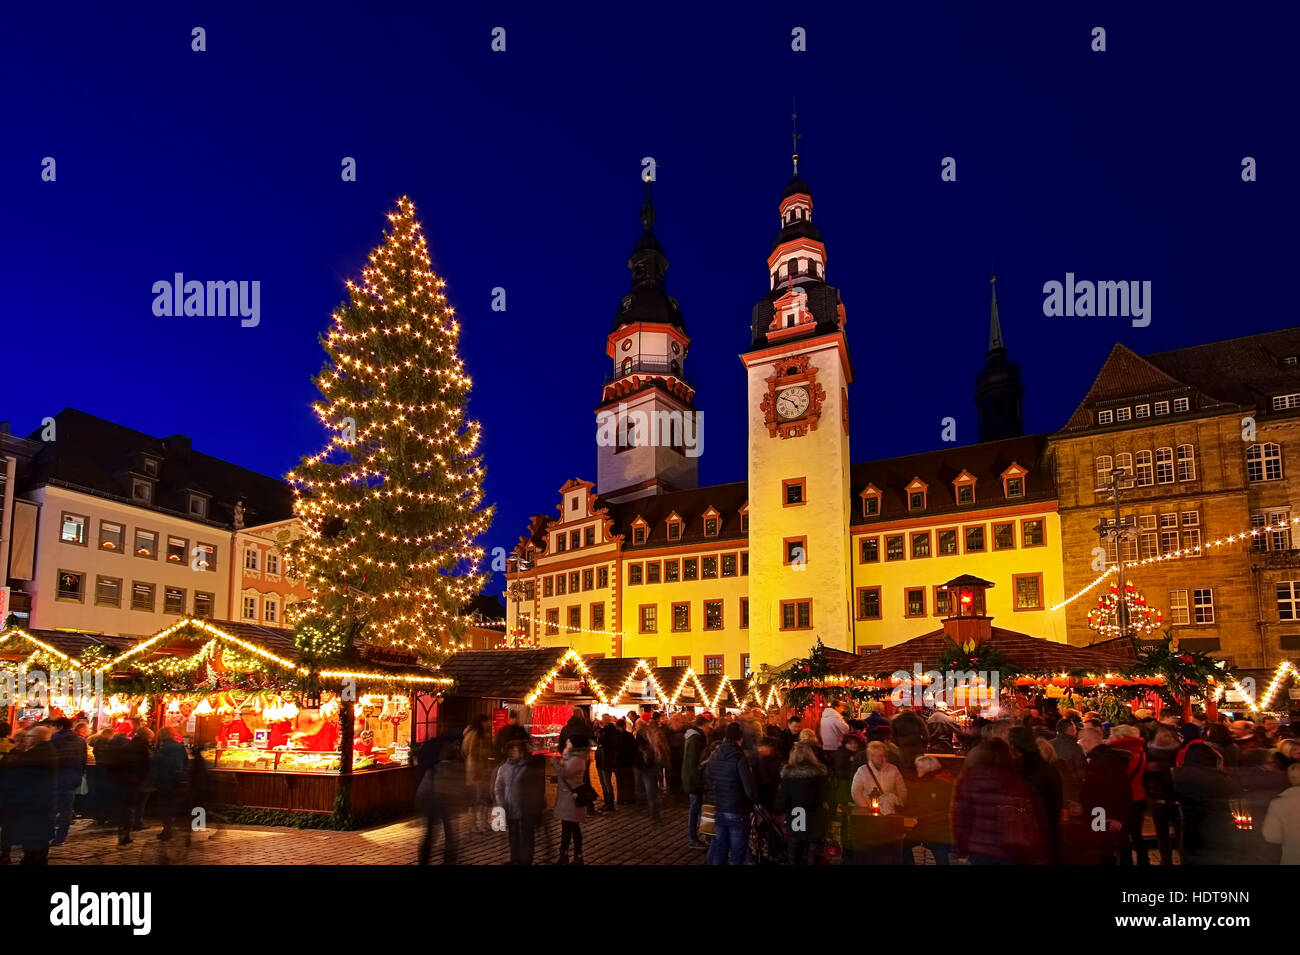 Chemnitz Weihnachtsmarkt - Chemnitz christmas market in Germany Stock Photo